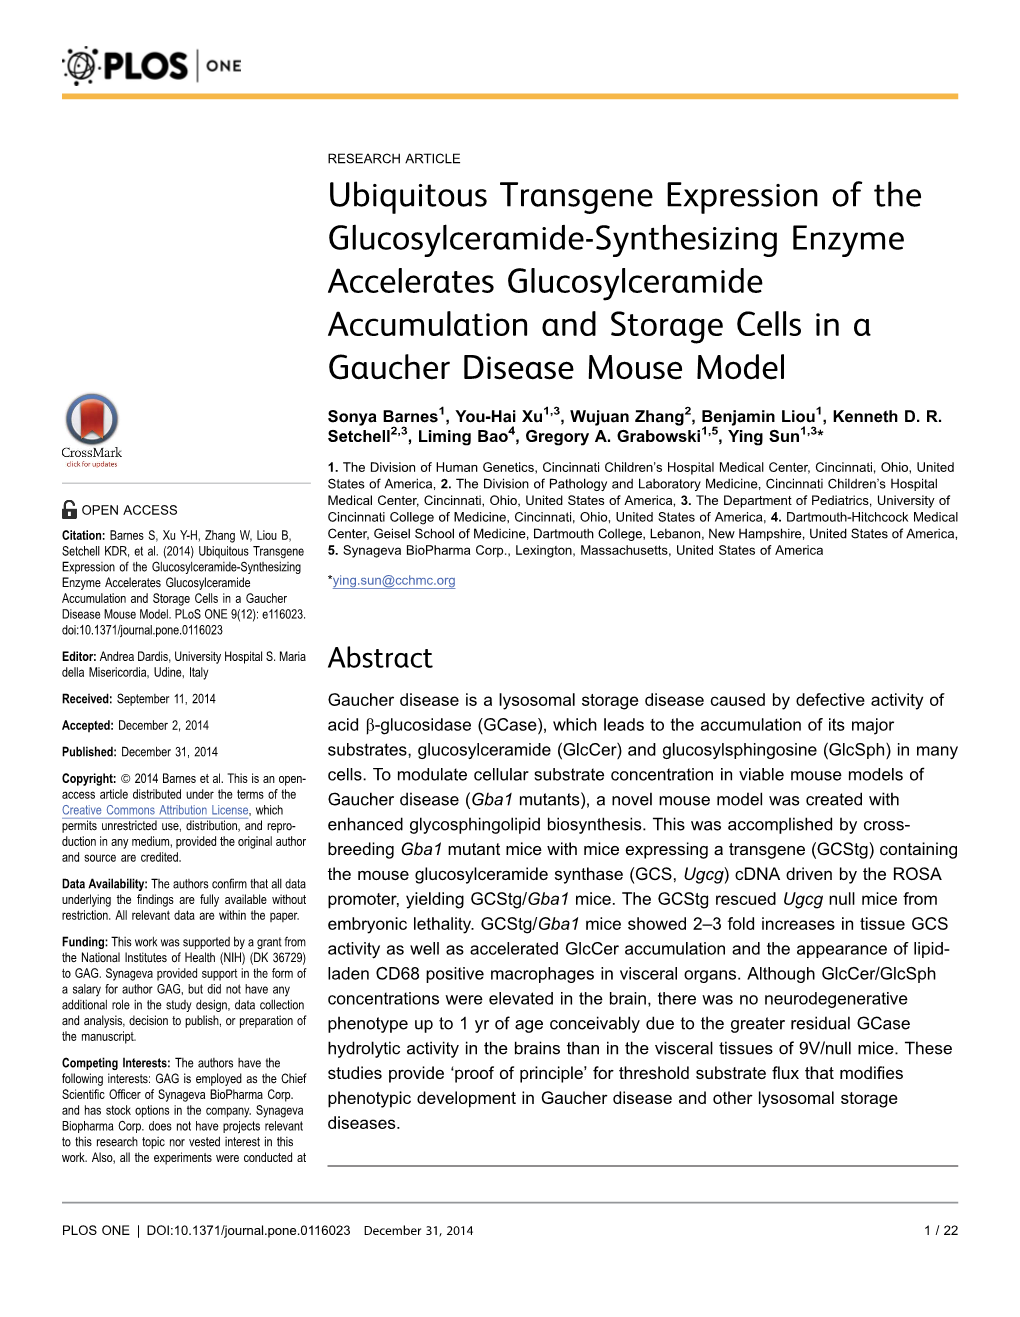 Ubiquitous Transgene Expression of the Glucosylceramide-Synthesizing